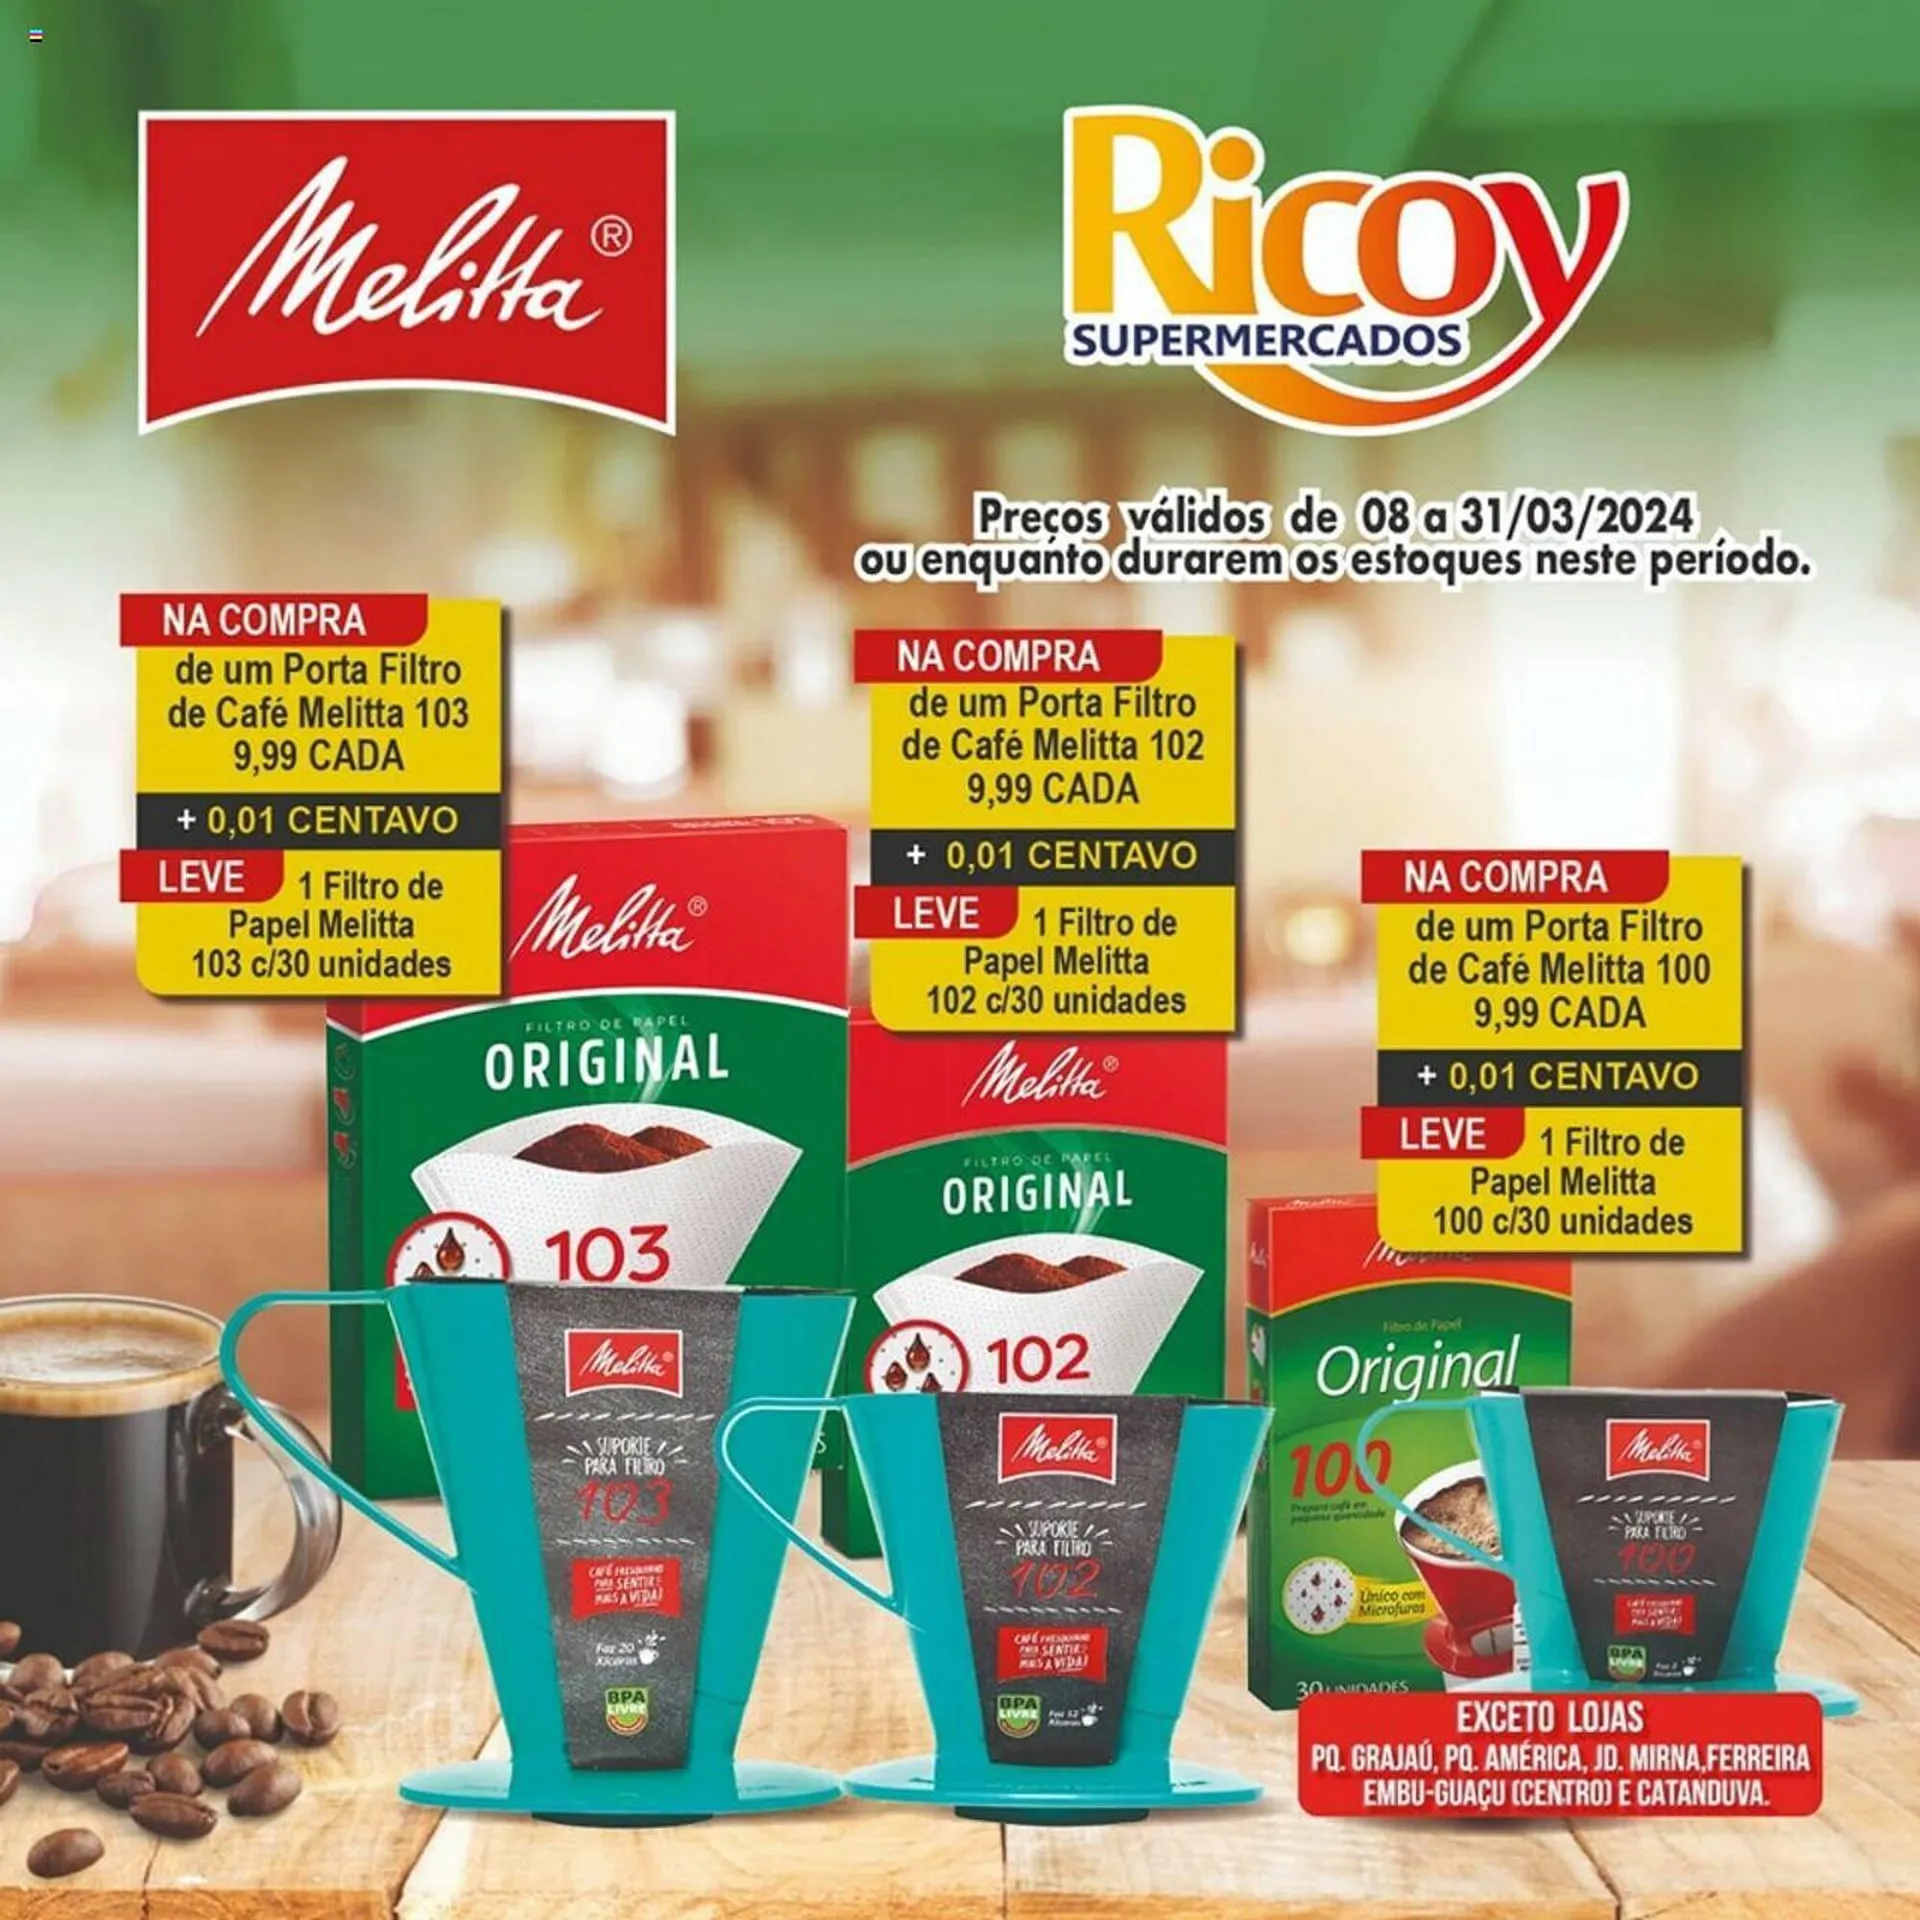 Encarte de Catálogo Ricoy Supermercados 8 de março até 31 de março 2024 - Pagina 1